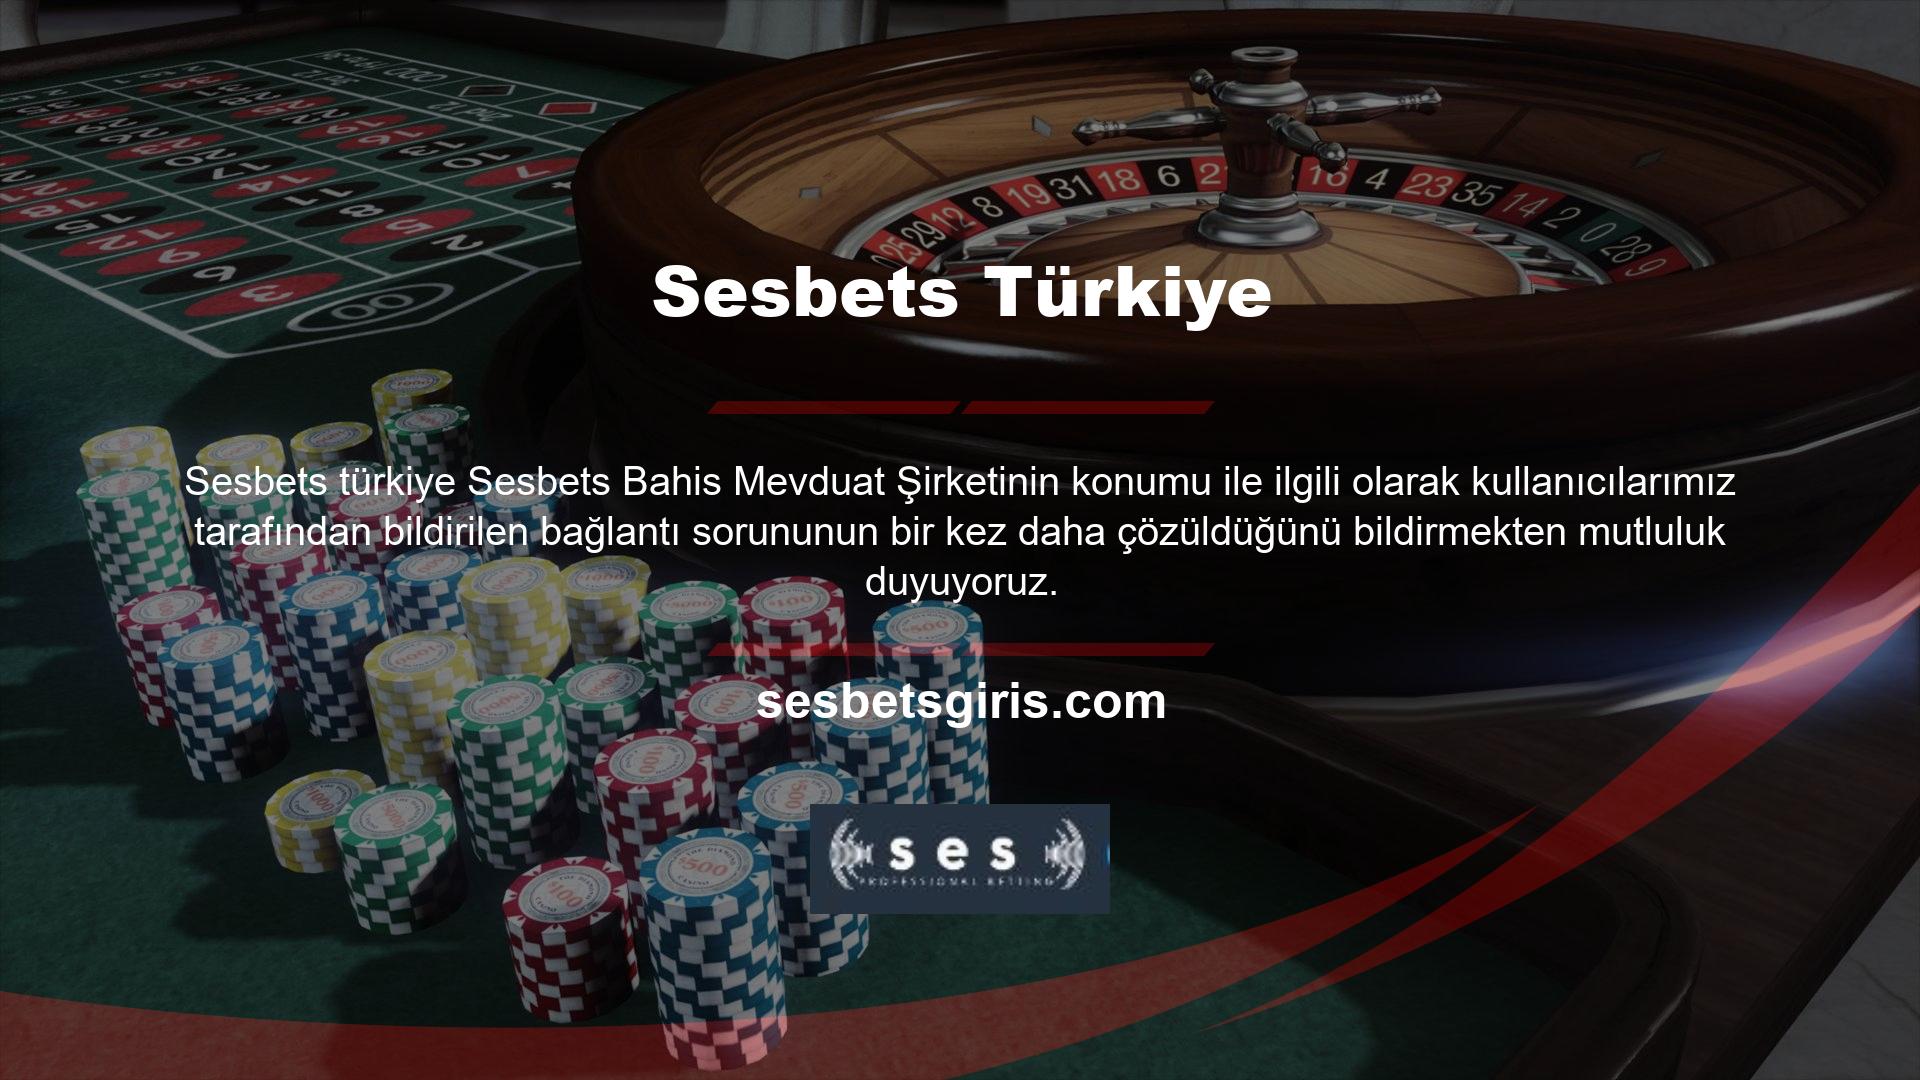 Türk hukuku, Sesbets sitesinin ait olduğu ticaret şirketinin kapatılmasını gerektirmez